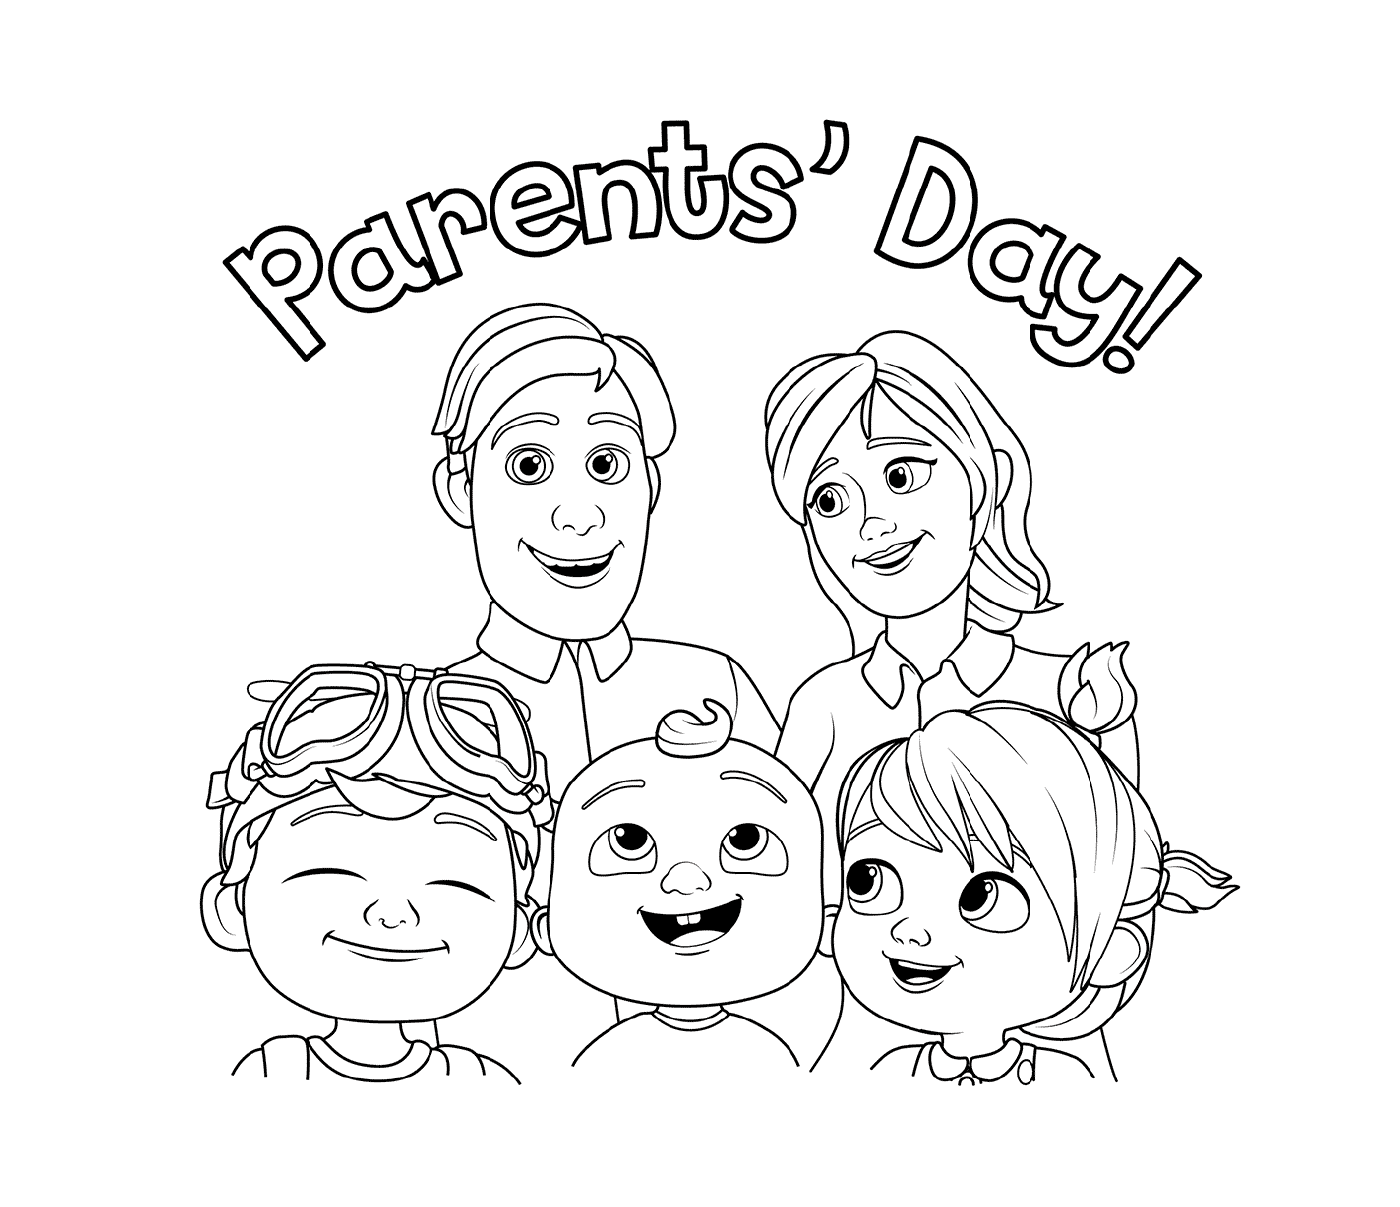  माता - पिता के दिन: कोलोन परिवार के साथ 